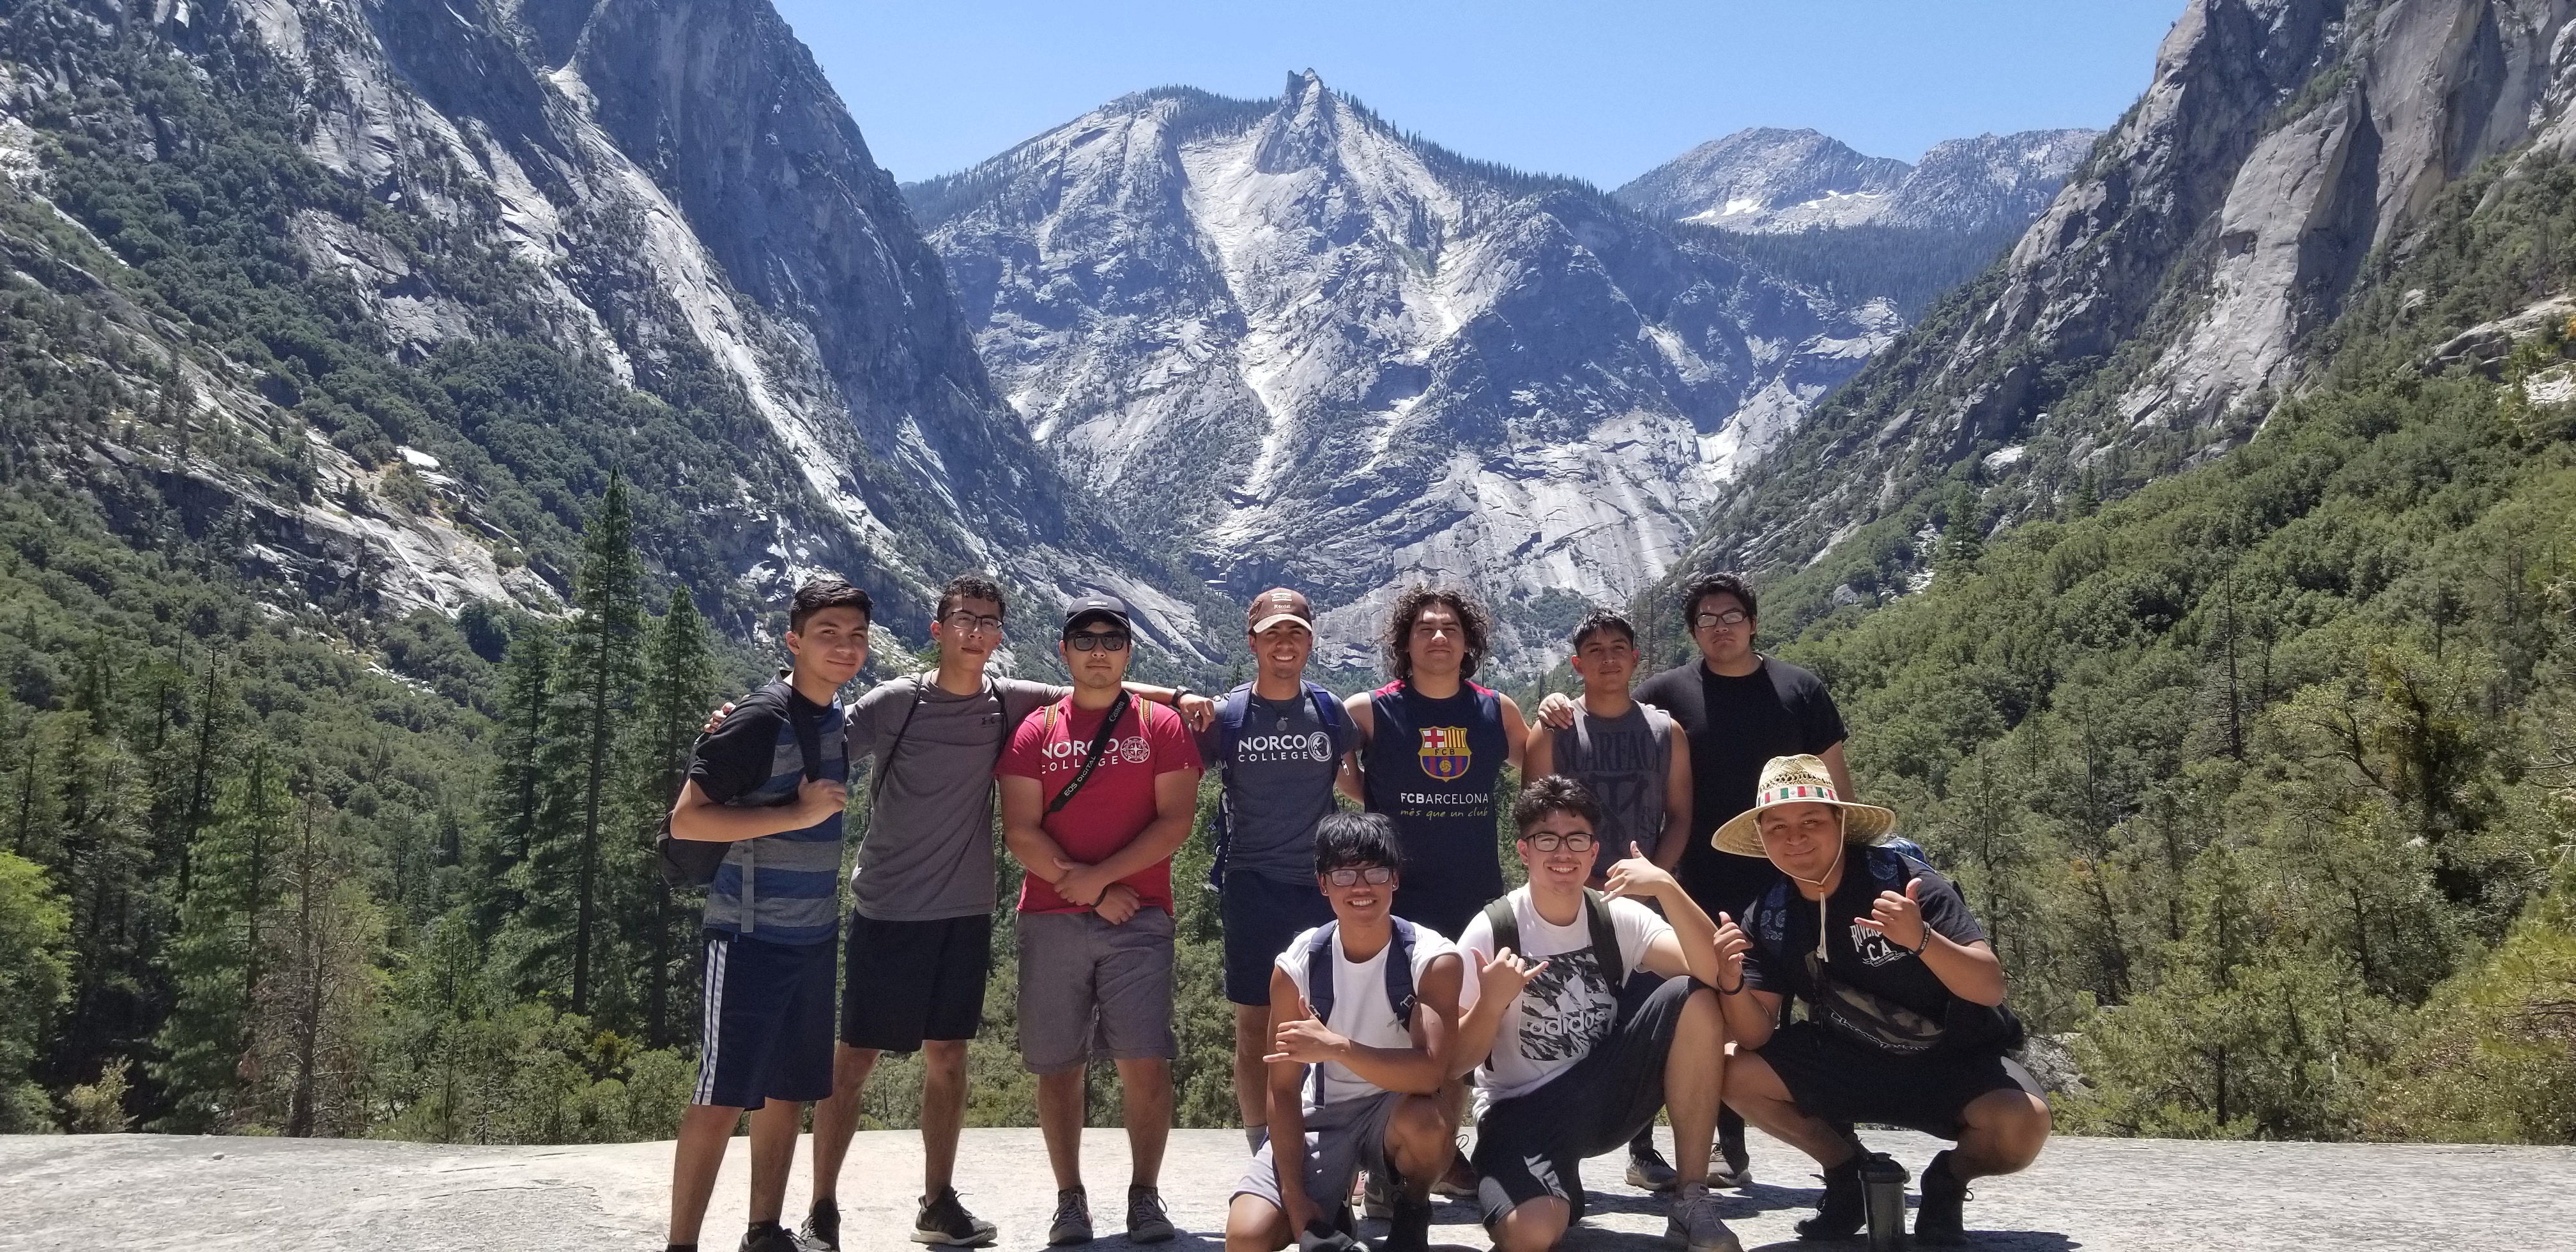 Brotherhood Event: Summer Camping at Kings Canyon National Park